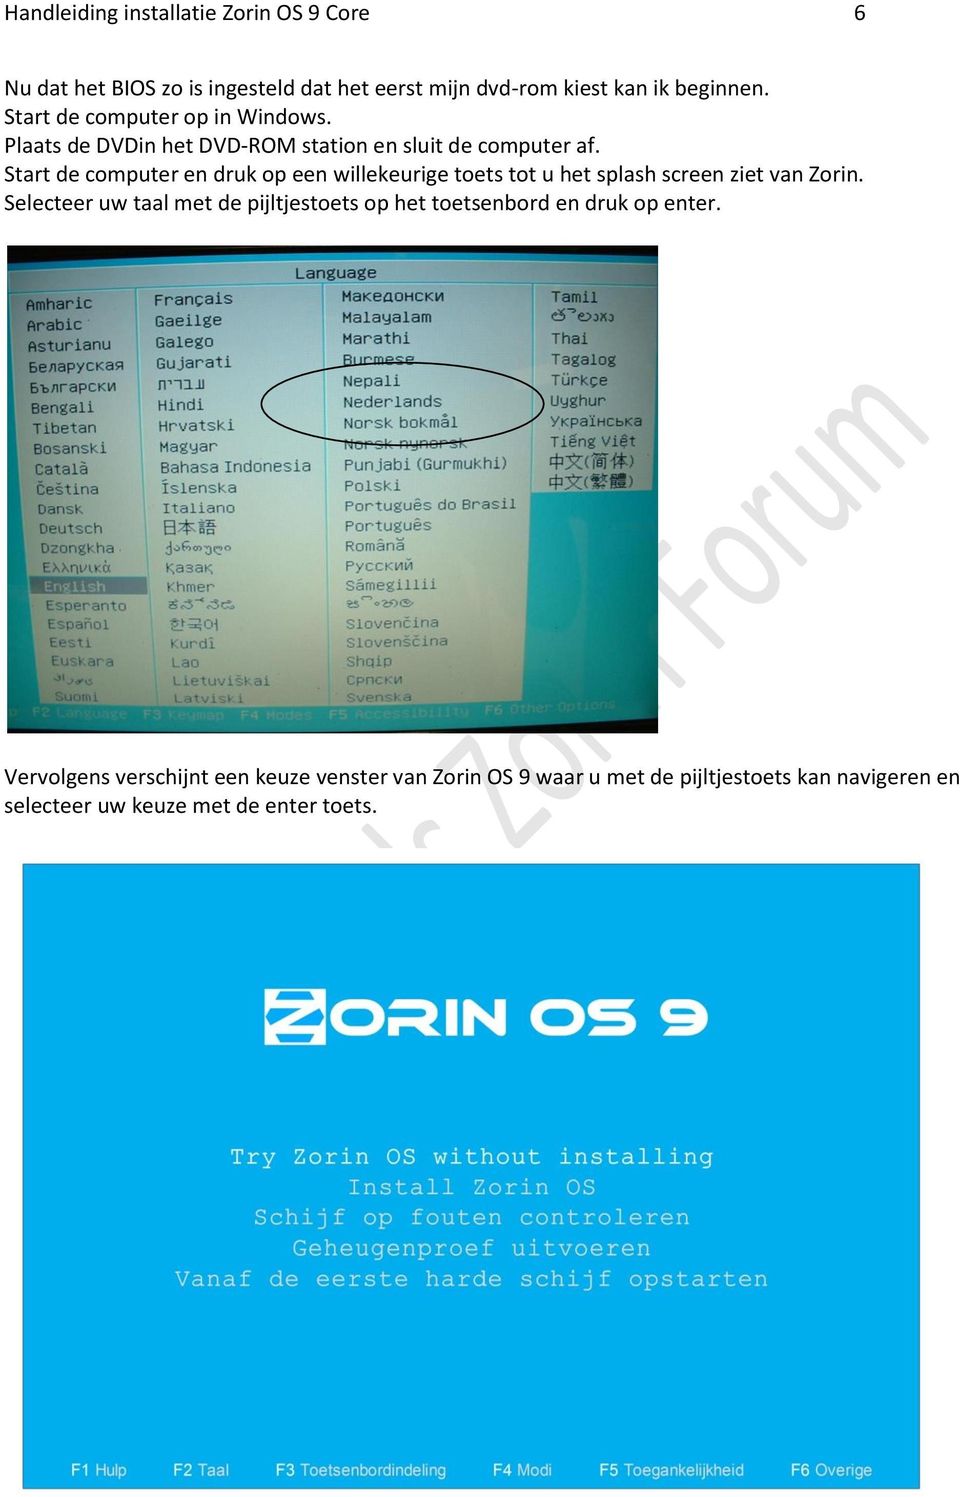 Start de computer en druk op een willekeurige toets tot u het splash screen ziet van Zorin.